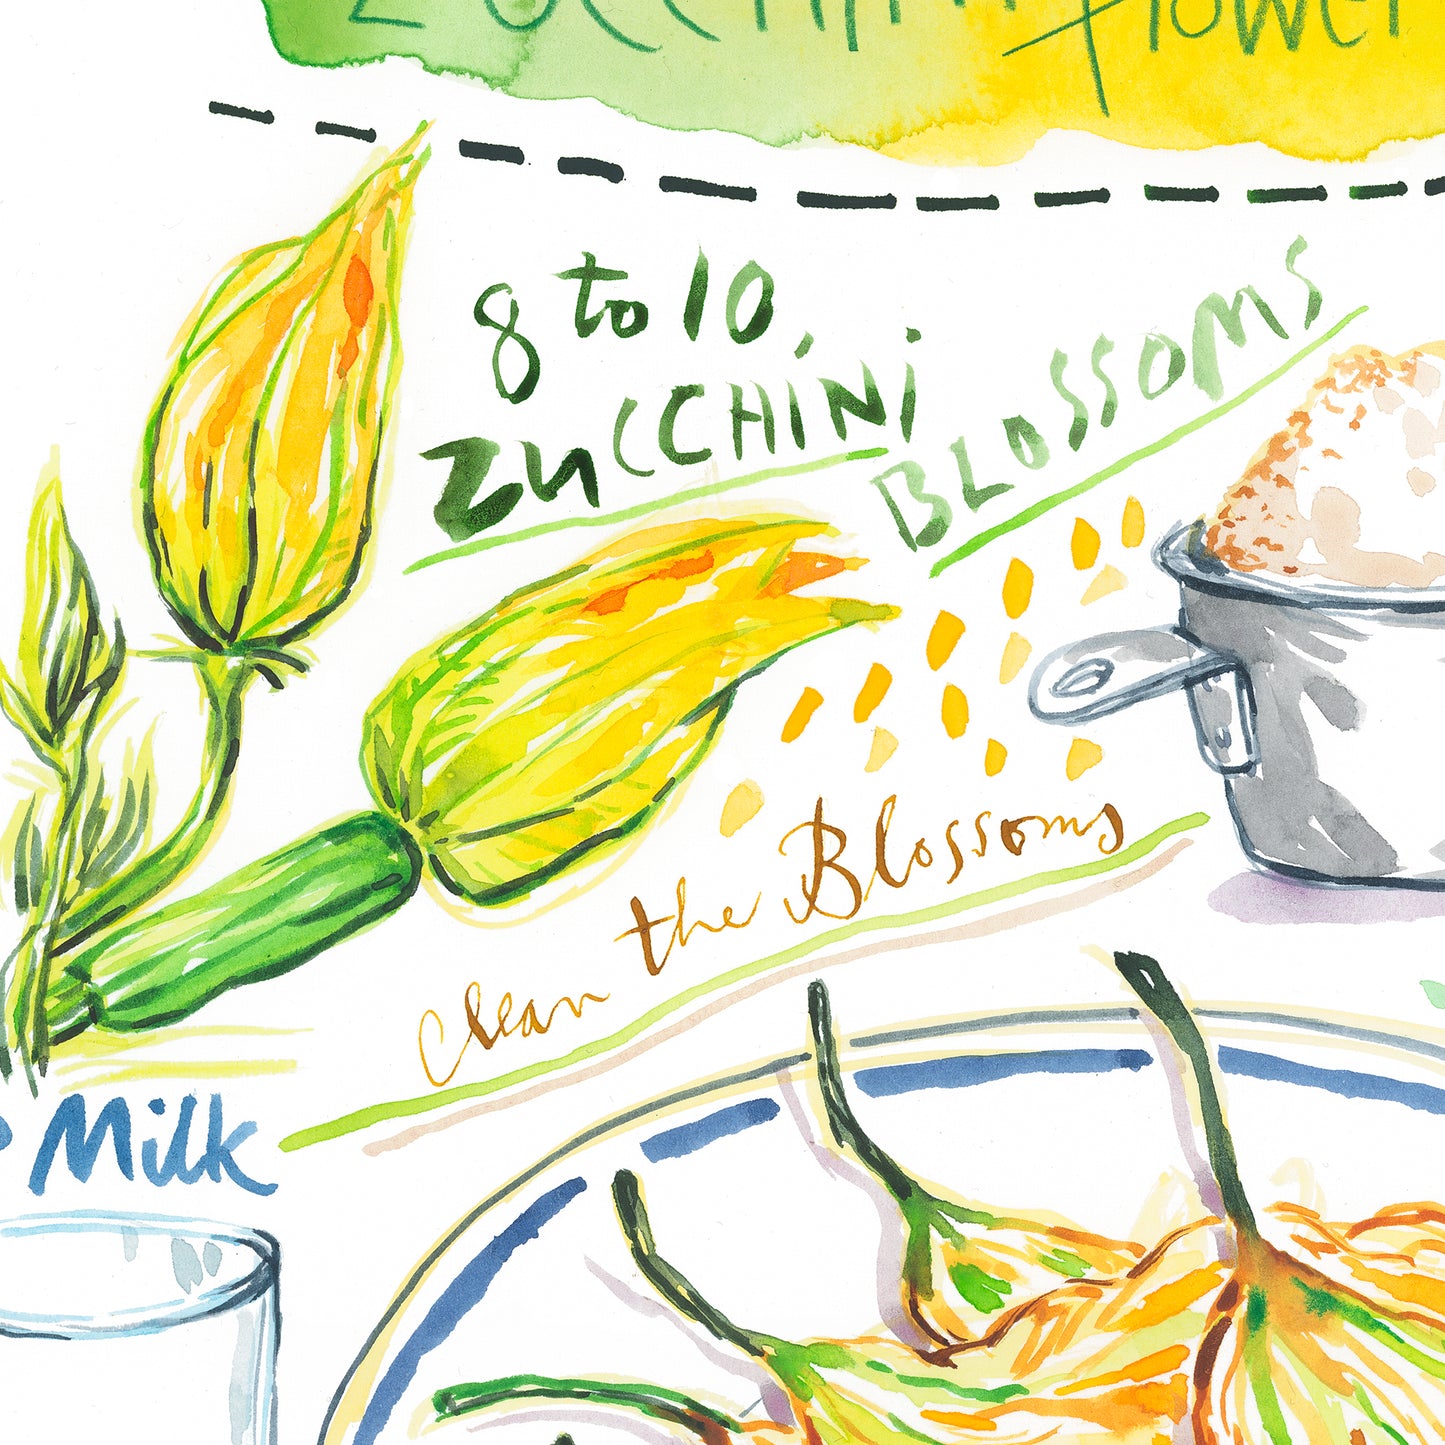 Zucchini Flower Fritters recipe